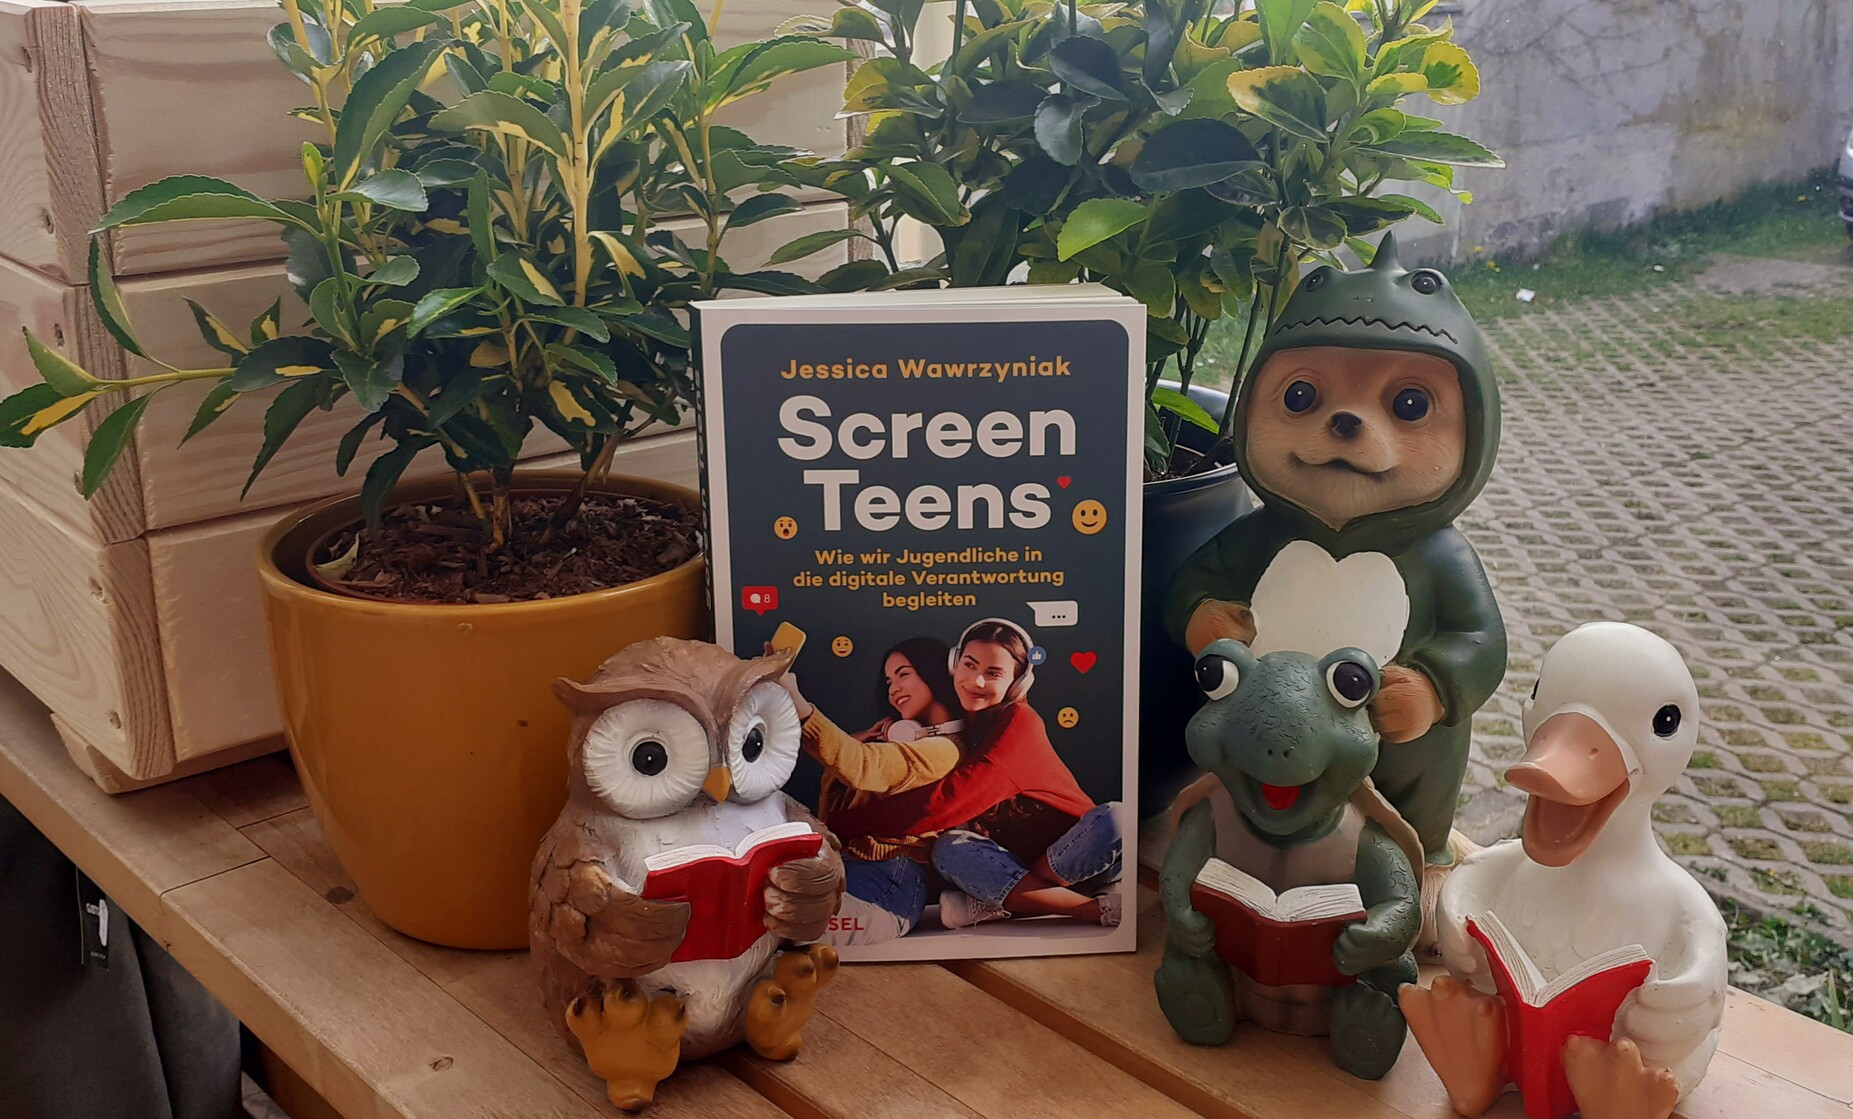 Das Buch "Screen Teens" steht auf einer Bank. Dahinter grüne Pflanzen. Davor Gartenfiguren, die ein Buch lesen: Eine Eule, eine Schildkröte und eine Gans